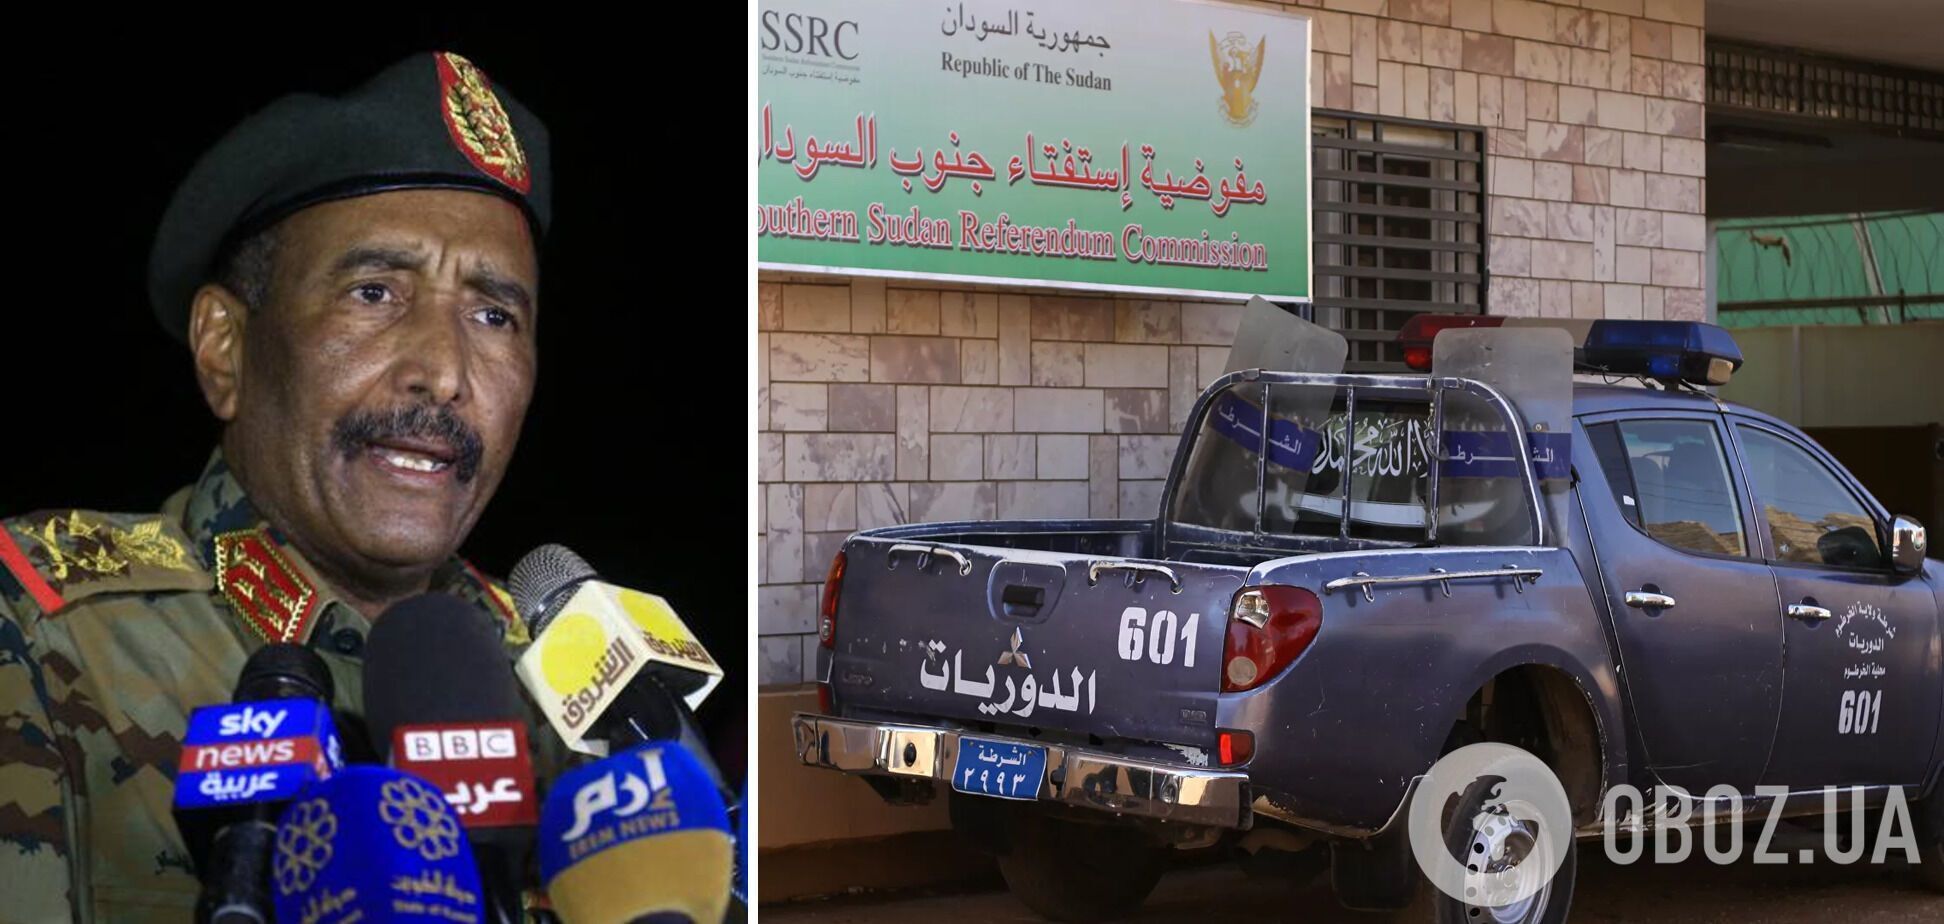 За переворотом якобы стоит фактический президент Судана Абдель Фаттах Аль Бурхан